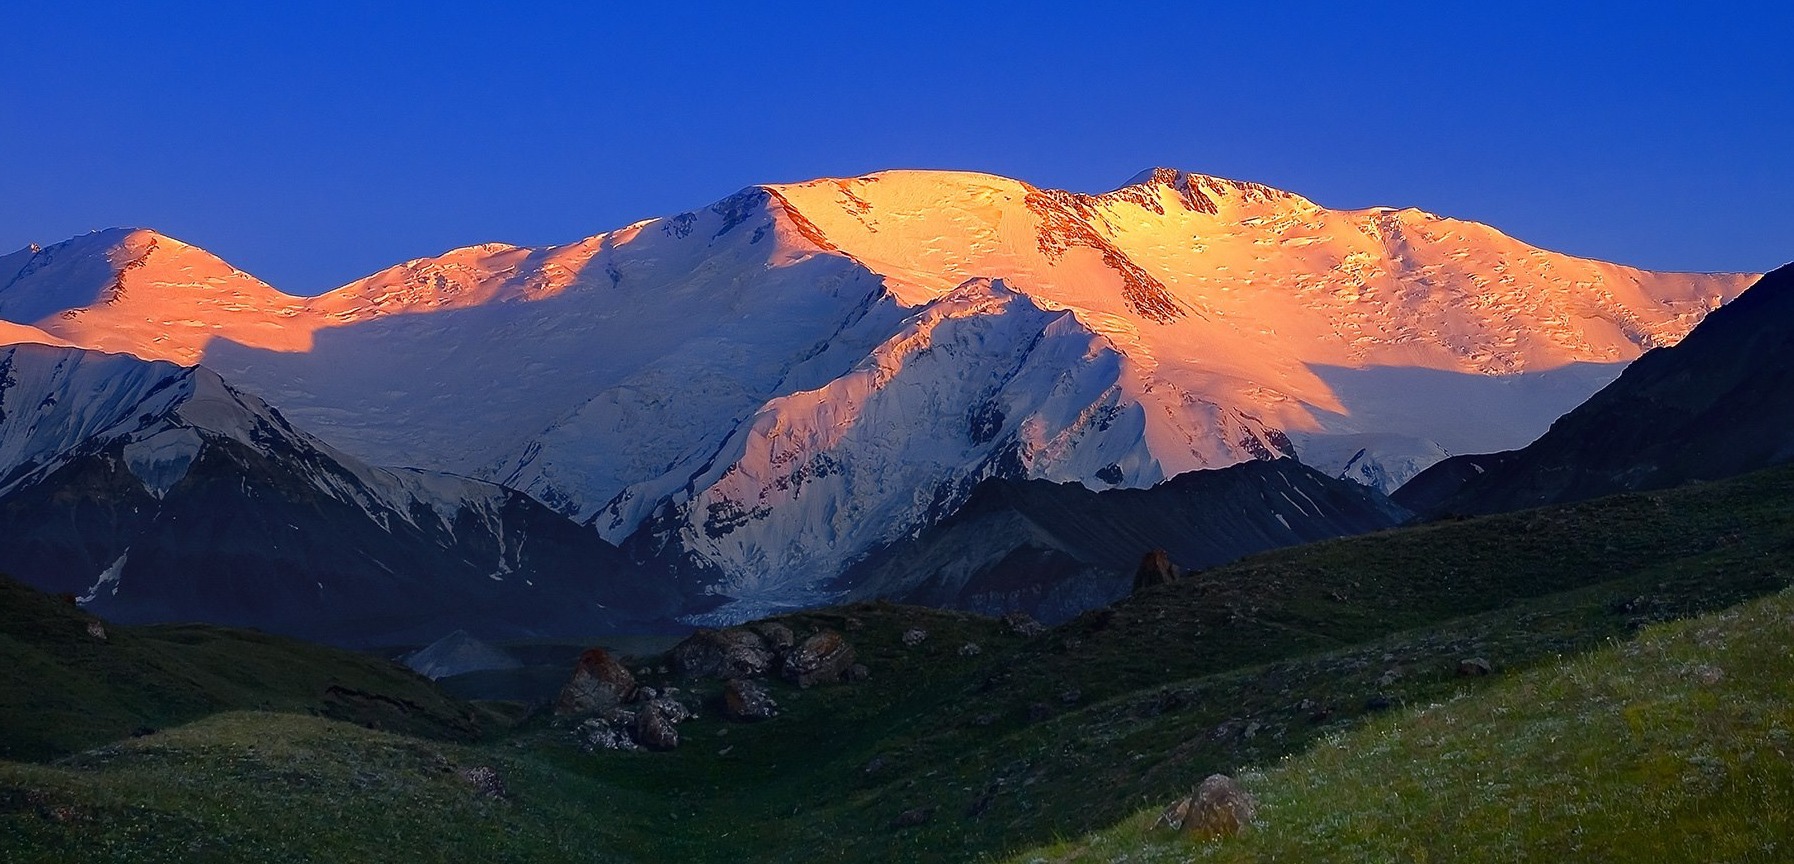 Памир самая высокая. Памир пик Ленина. Памирские горы Киргизии. Киргизия горы пик Ленина. Горы Памира пик Ленина.